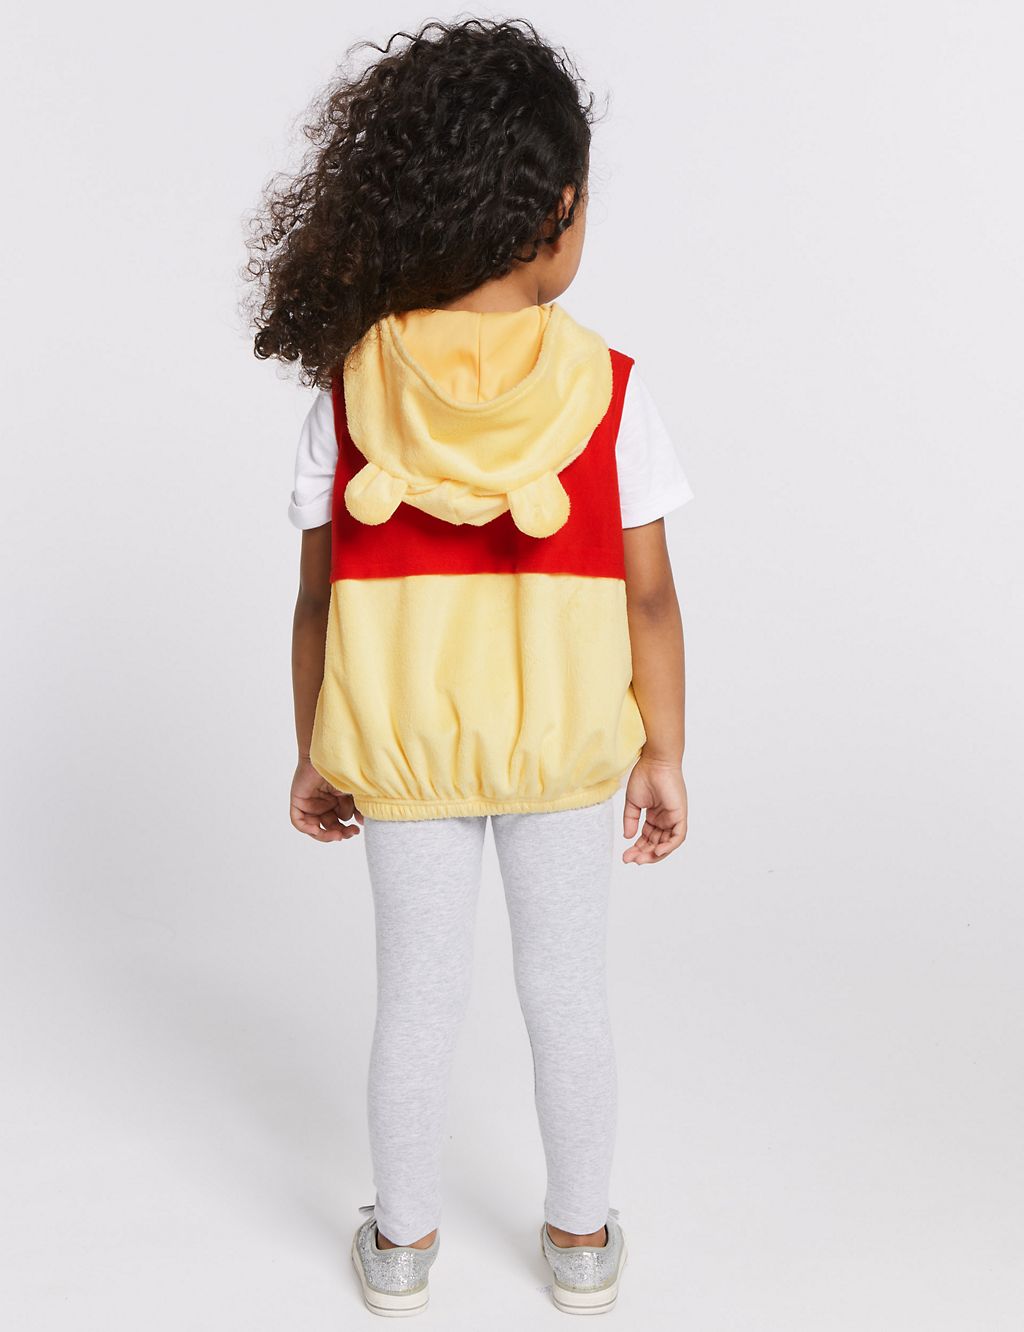 Kids’ Winnie the Pooh & Friends™ Dress Up 7 of 7